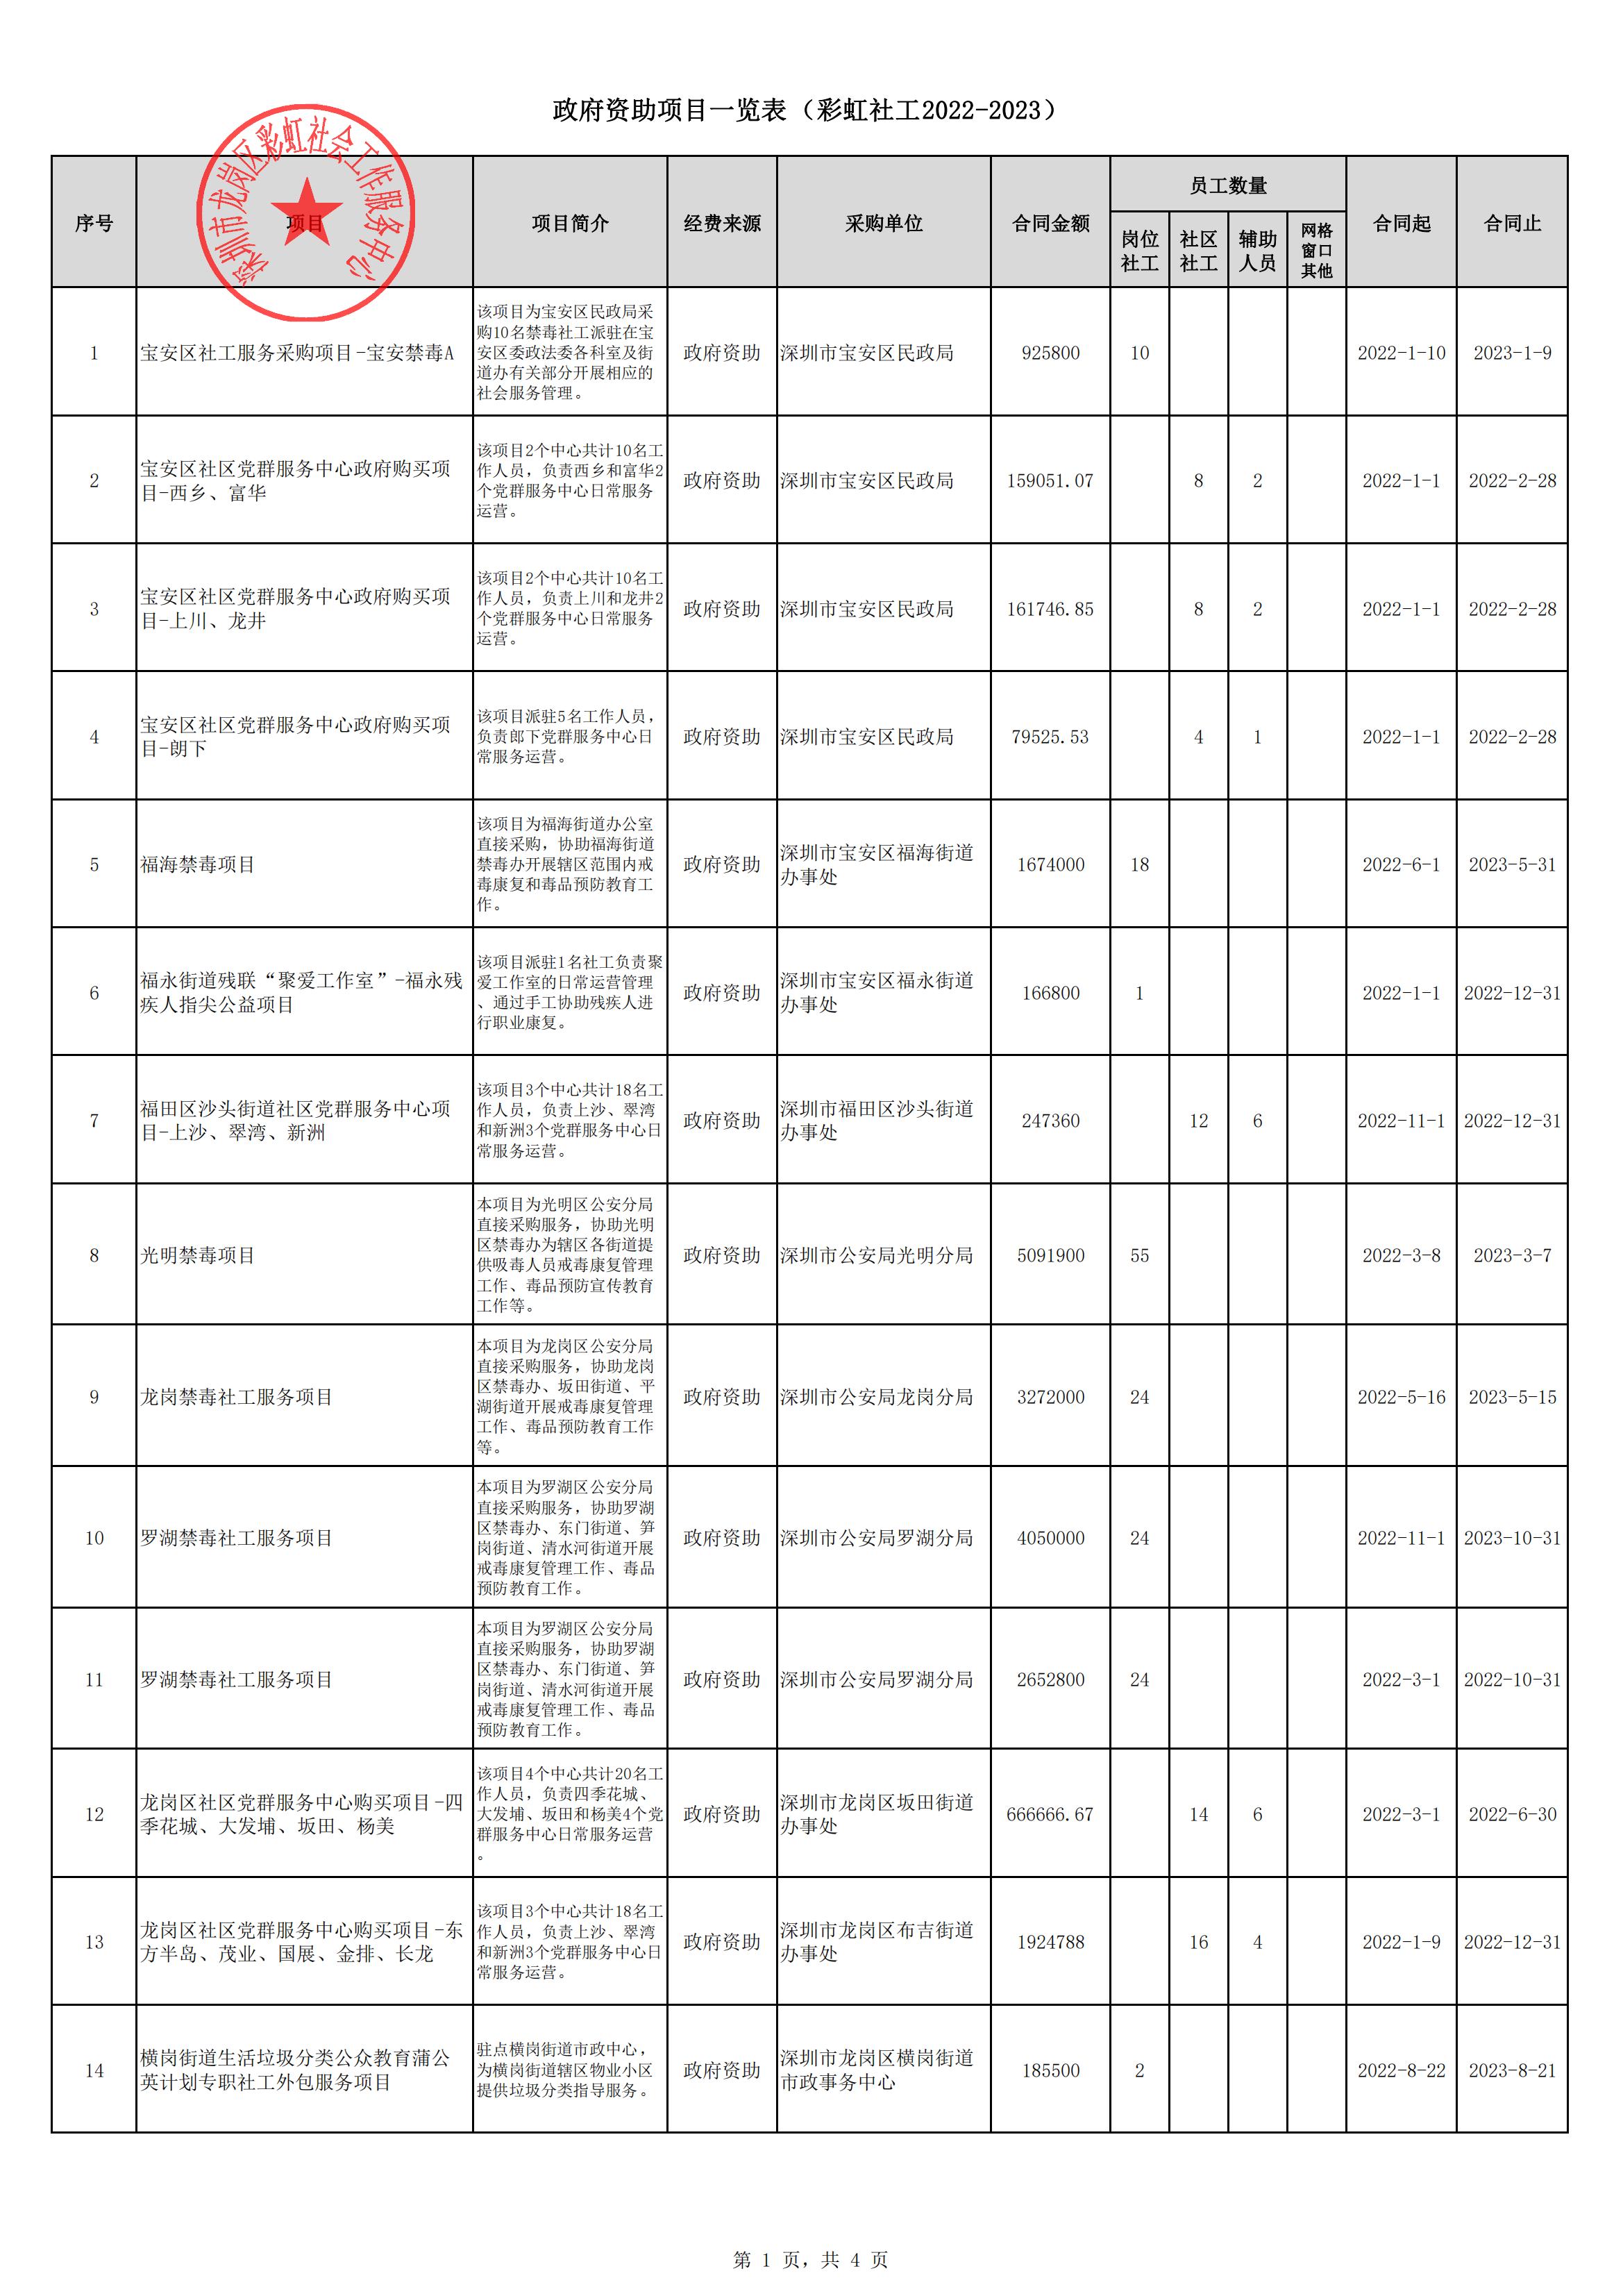 彩虹社工2022年度政府资助项目一览表_00.jpg